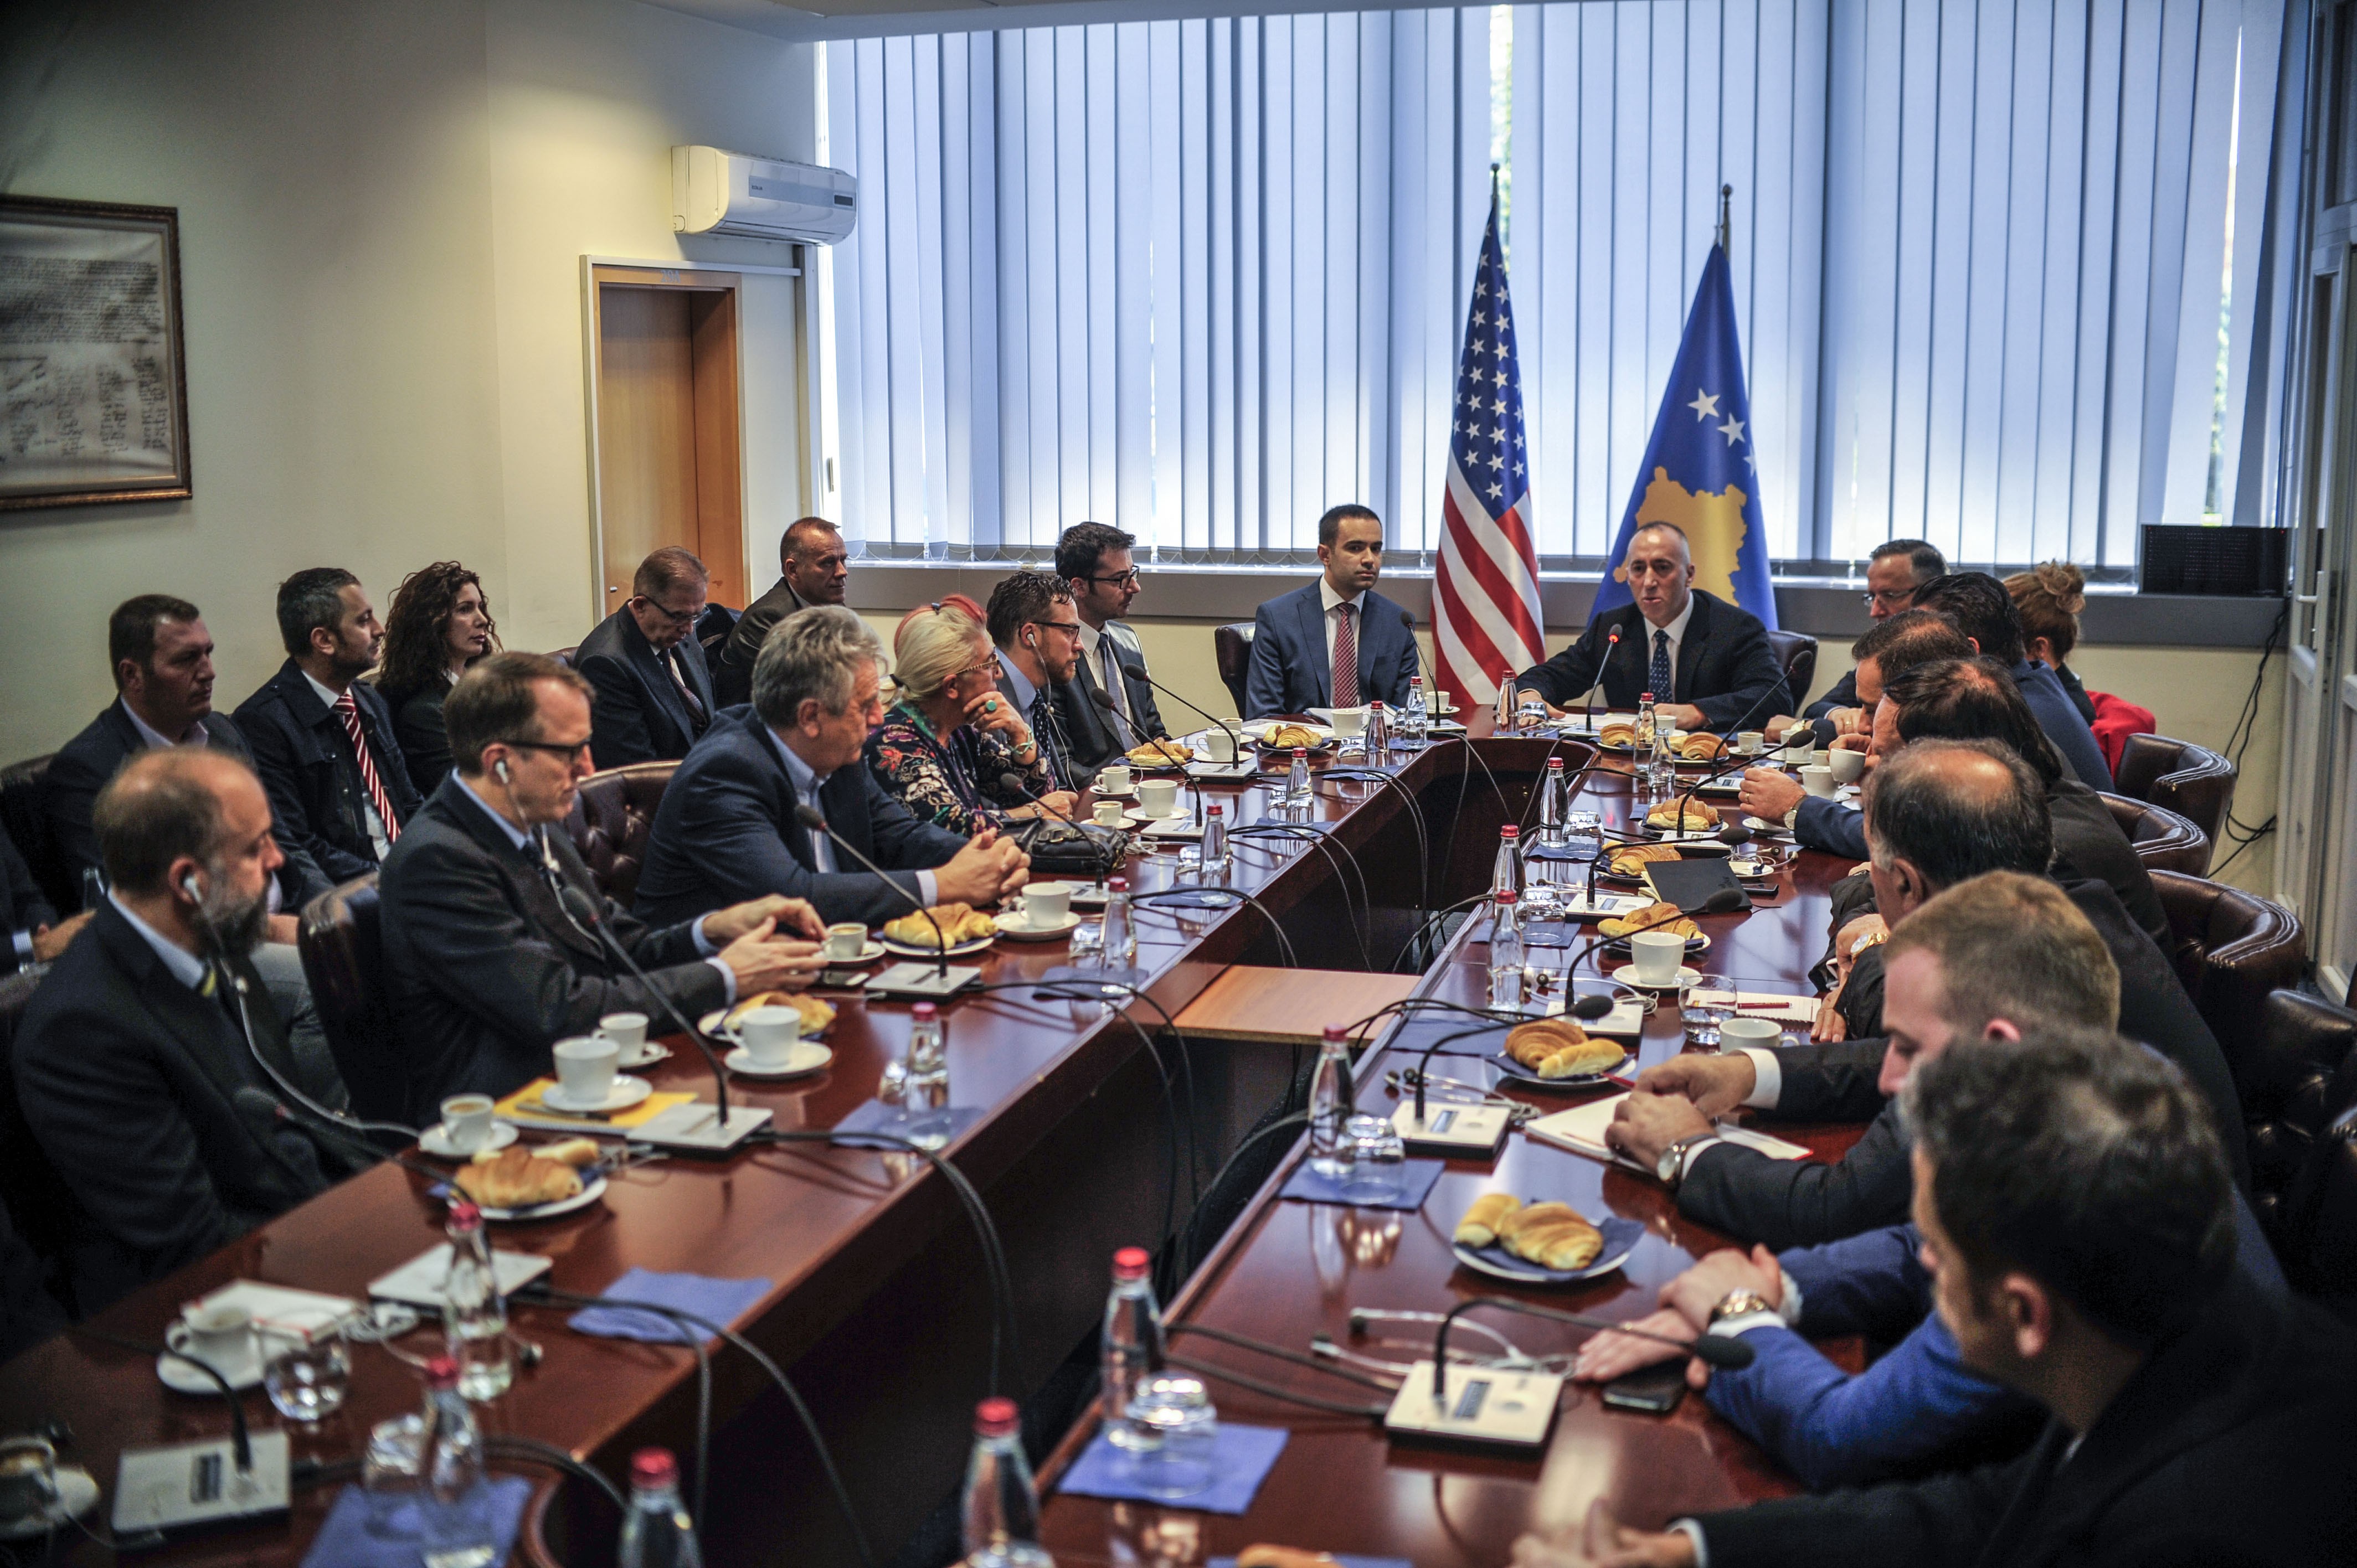 OEA ofron rekomandime konkrete për zhvillimin e sektorit privat në Kosovë